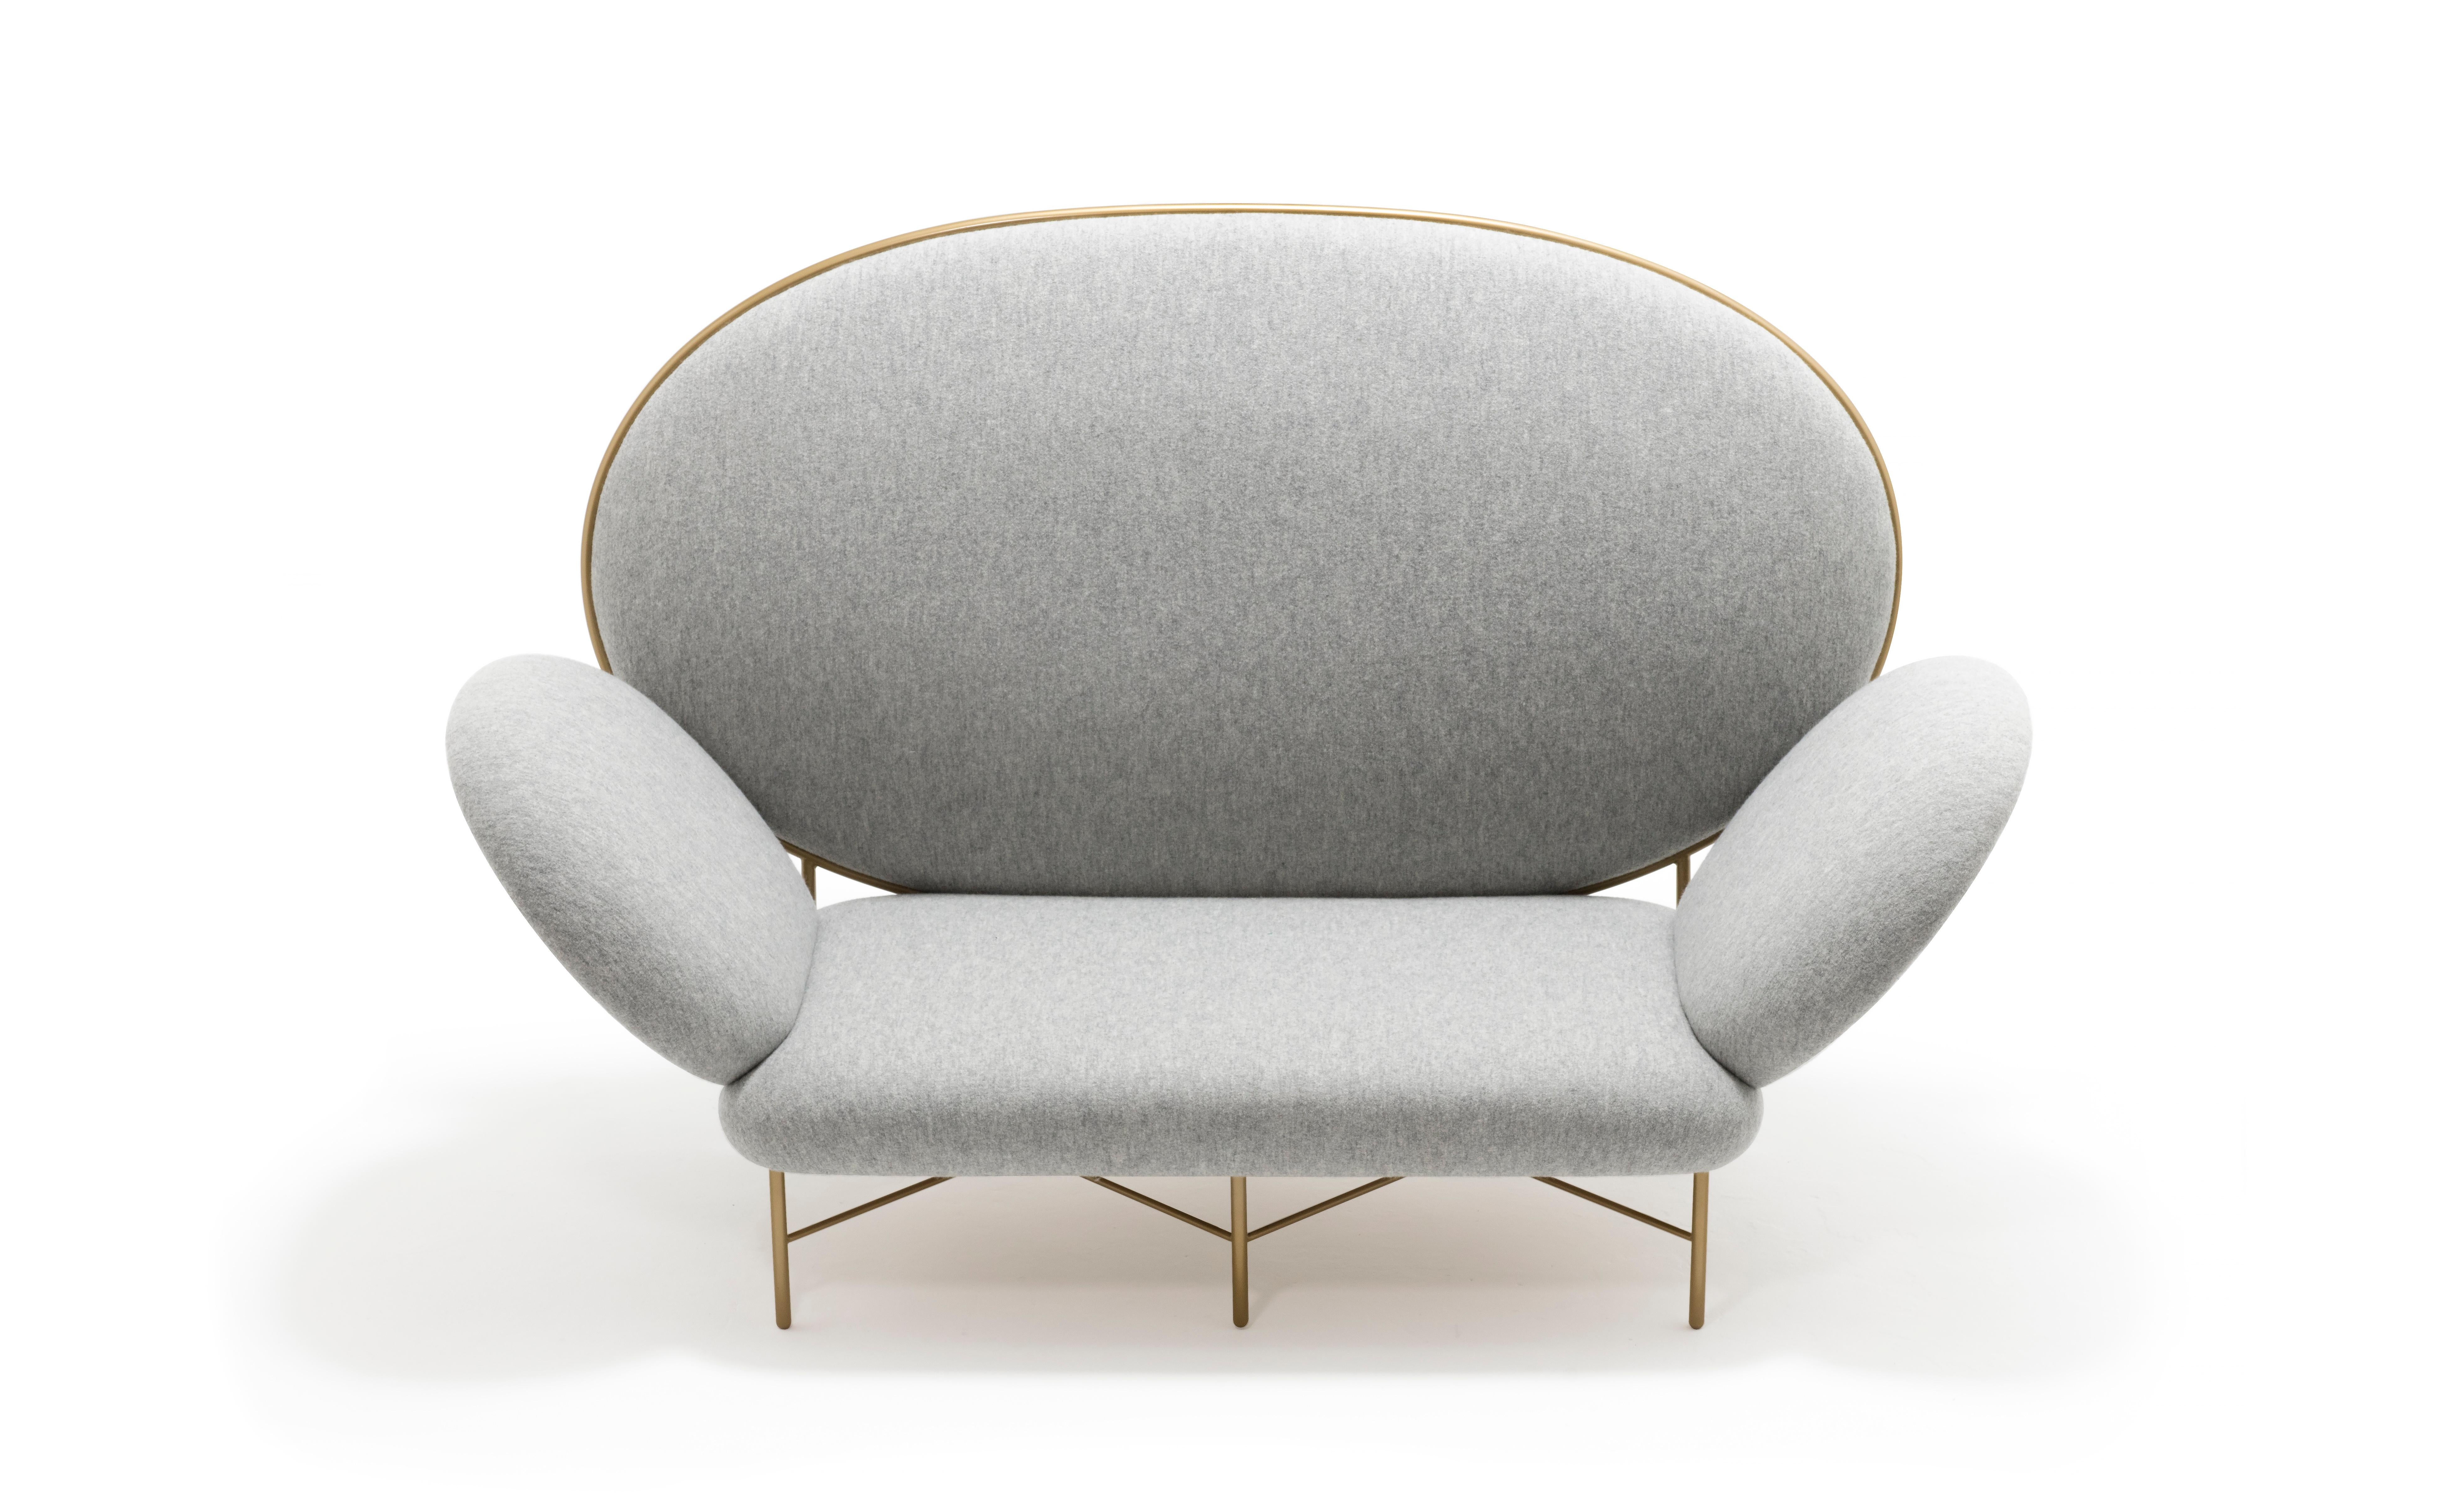 Canapé gris contemporain tapissé d'ivoire - Stay Sofa de Nika Zupanc pour Se.

Design : Nika Zupanc
Cadre recouvert de tissu Holland & Sherry Chamonix (couleur fumée). Disponible également dans un choix de cuirs ou de tissus, ou dans le matériau